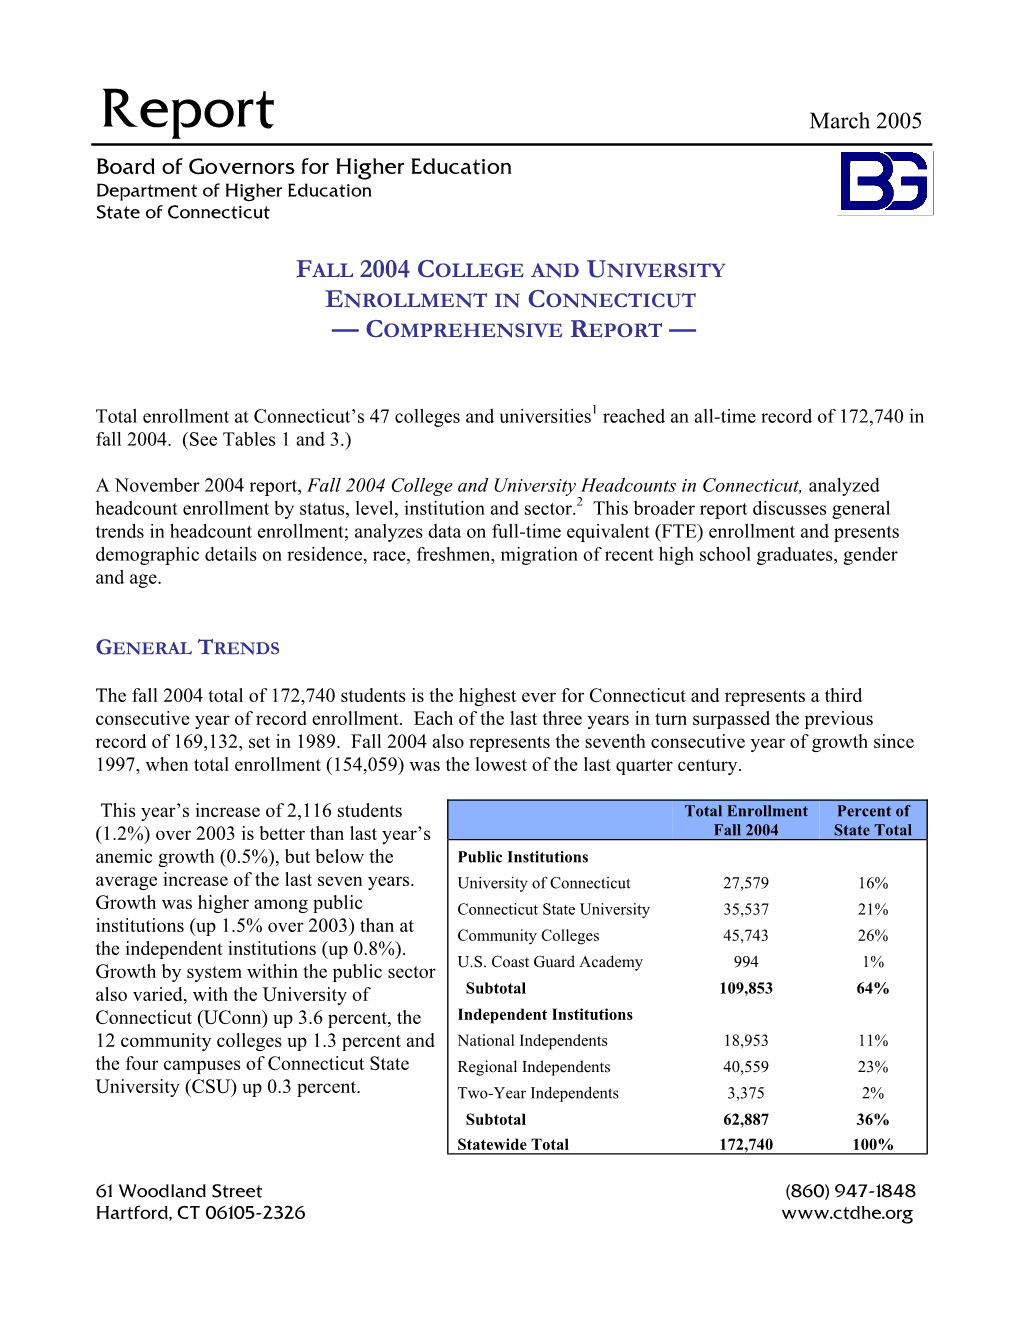 Fall 2004 Comprehensive Enrollment Report.Pub